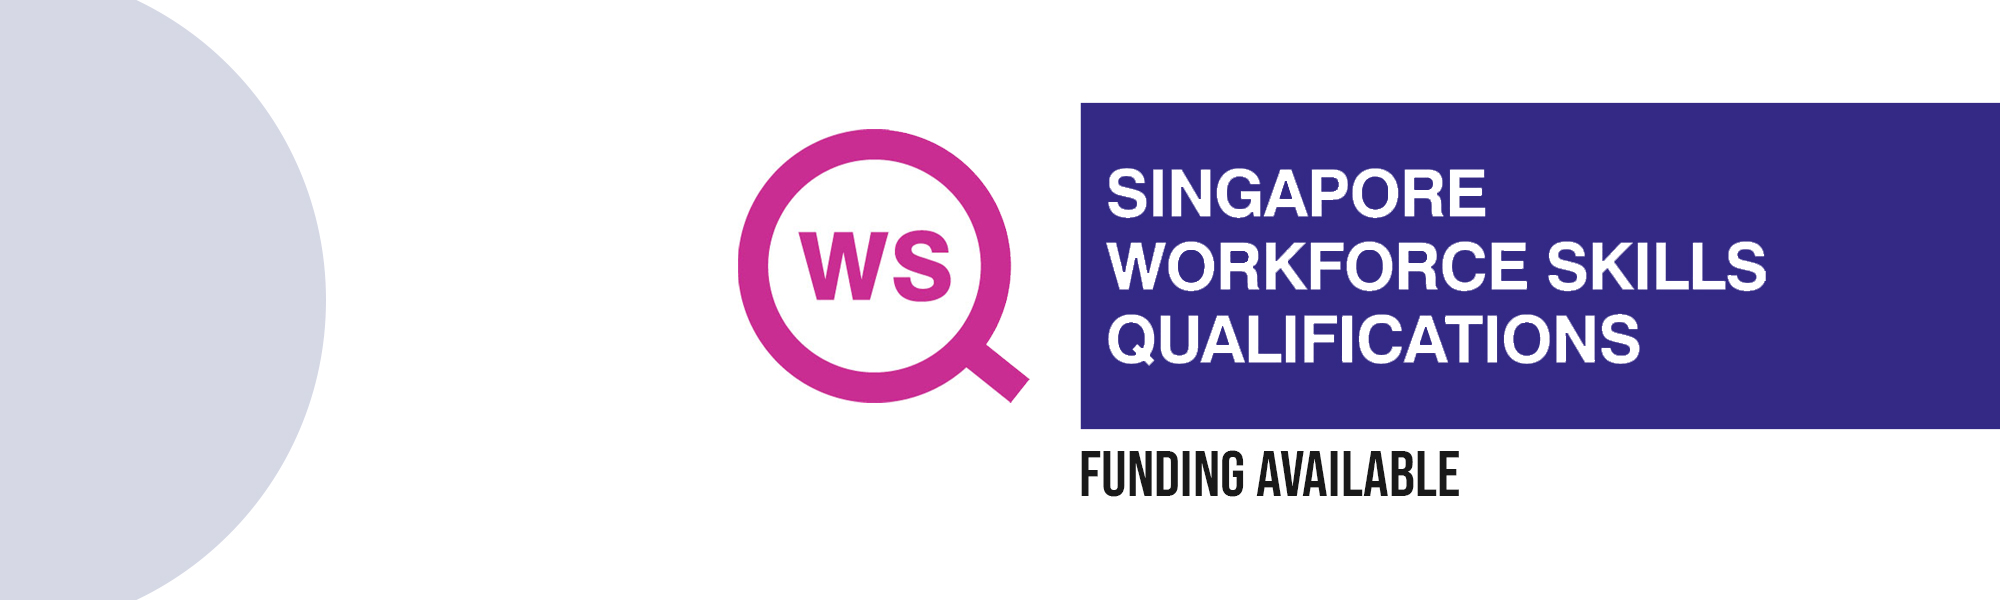 WSQ Funding Singapore